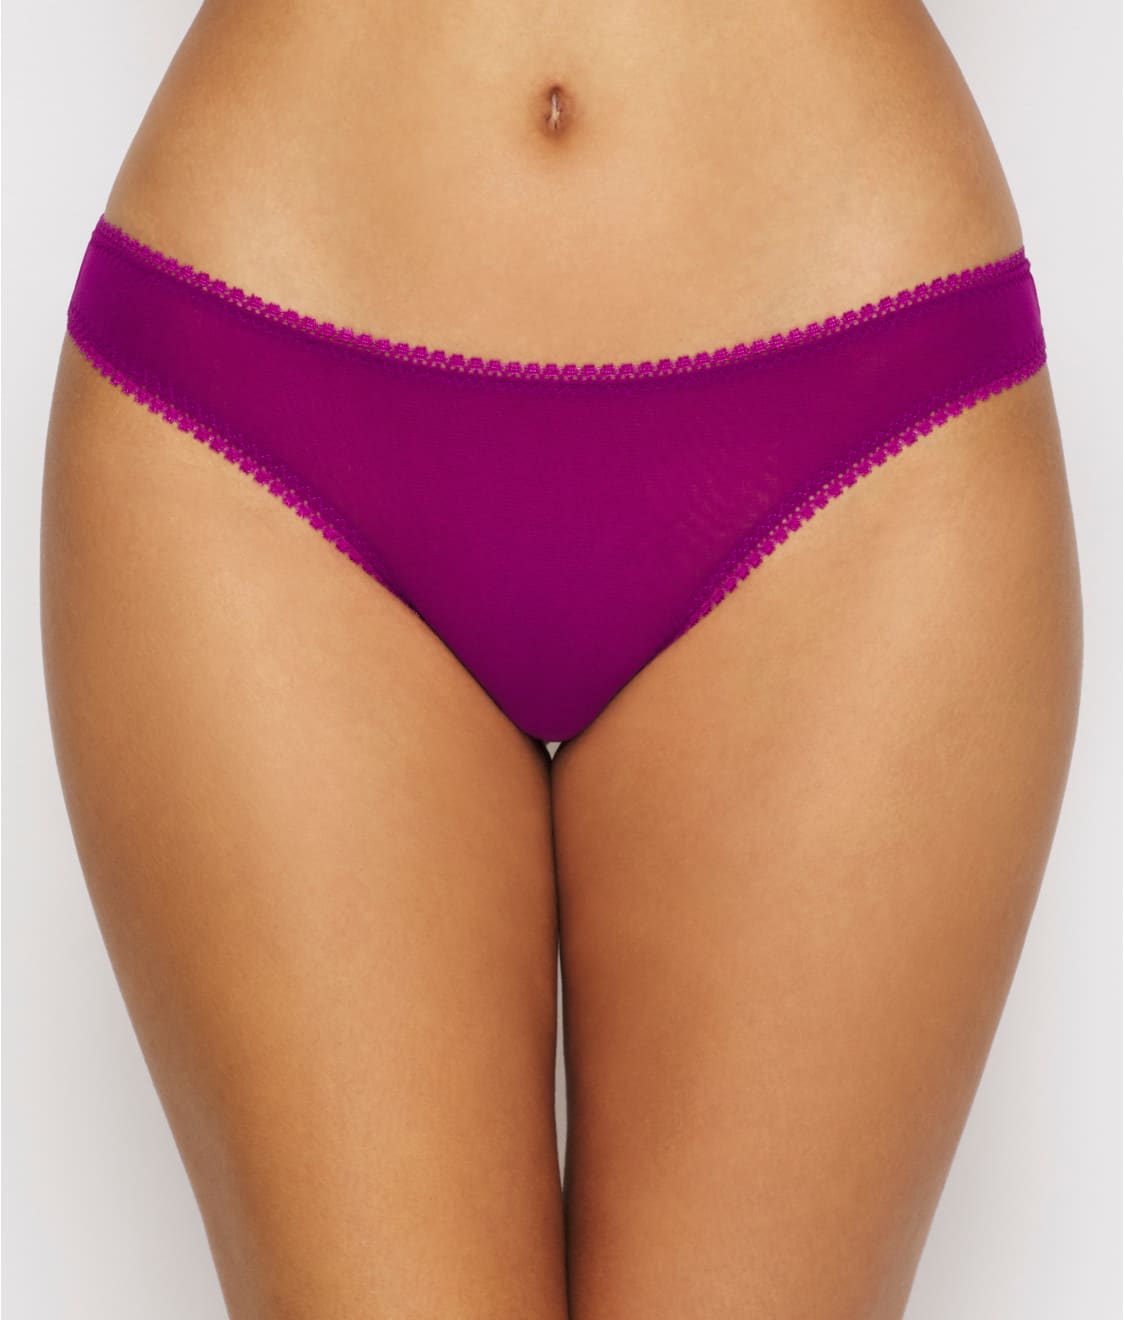 M/L Purple Velvet Nylon Gossamer Mesh Hip G Thong Details about   OnGossamer 3512 Apricot